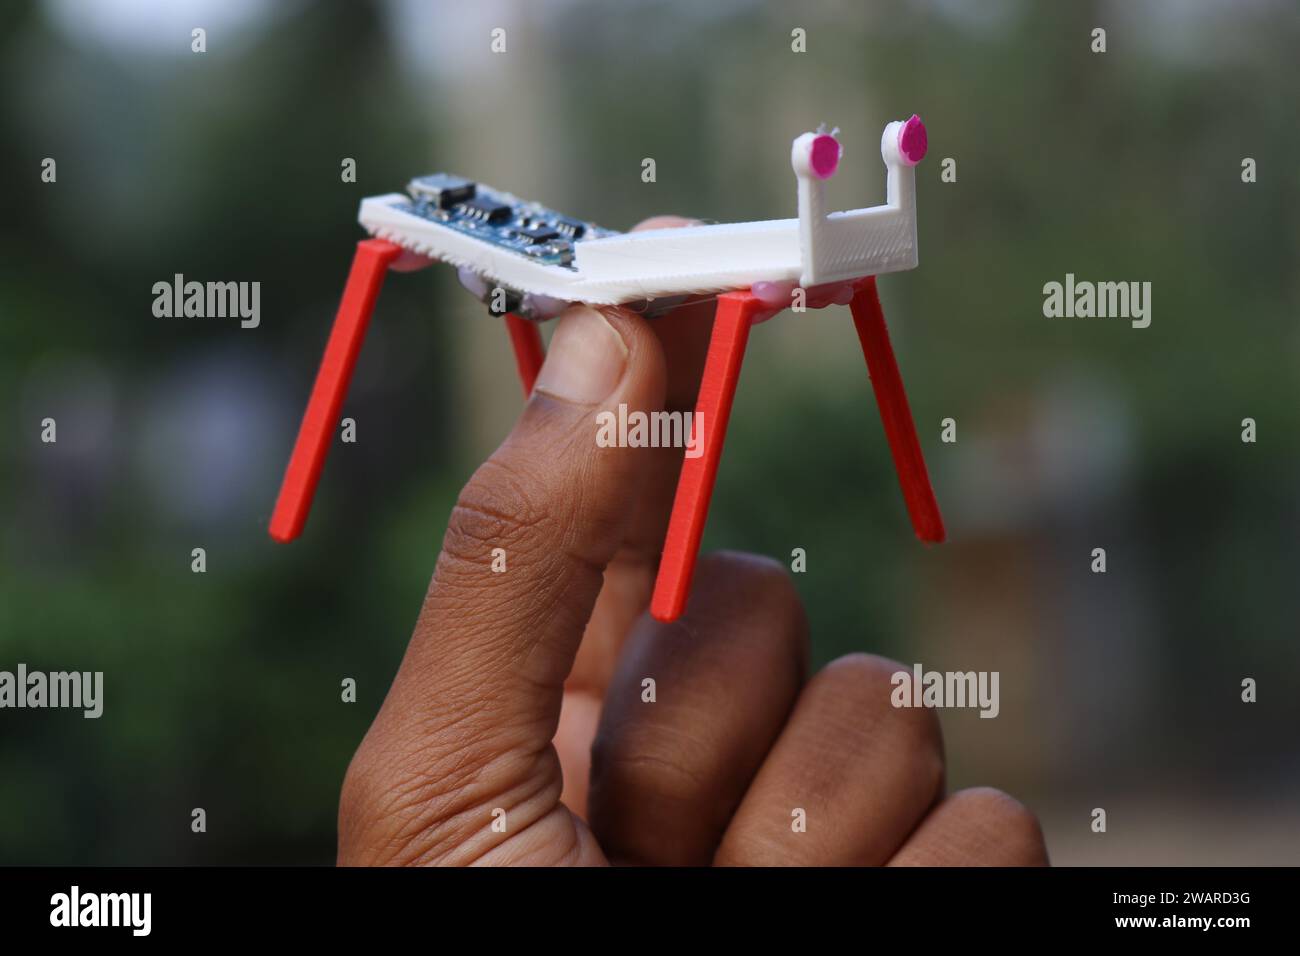 Modello di un piccolo robot a quattro gambe realizzato utilizzando la tecnologia di stampa 3D e semplici componenti elettronici tenuti in mano Foto Stock